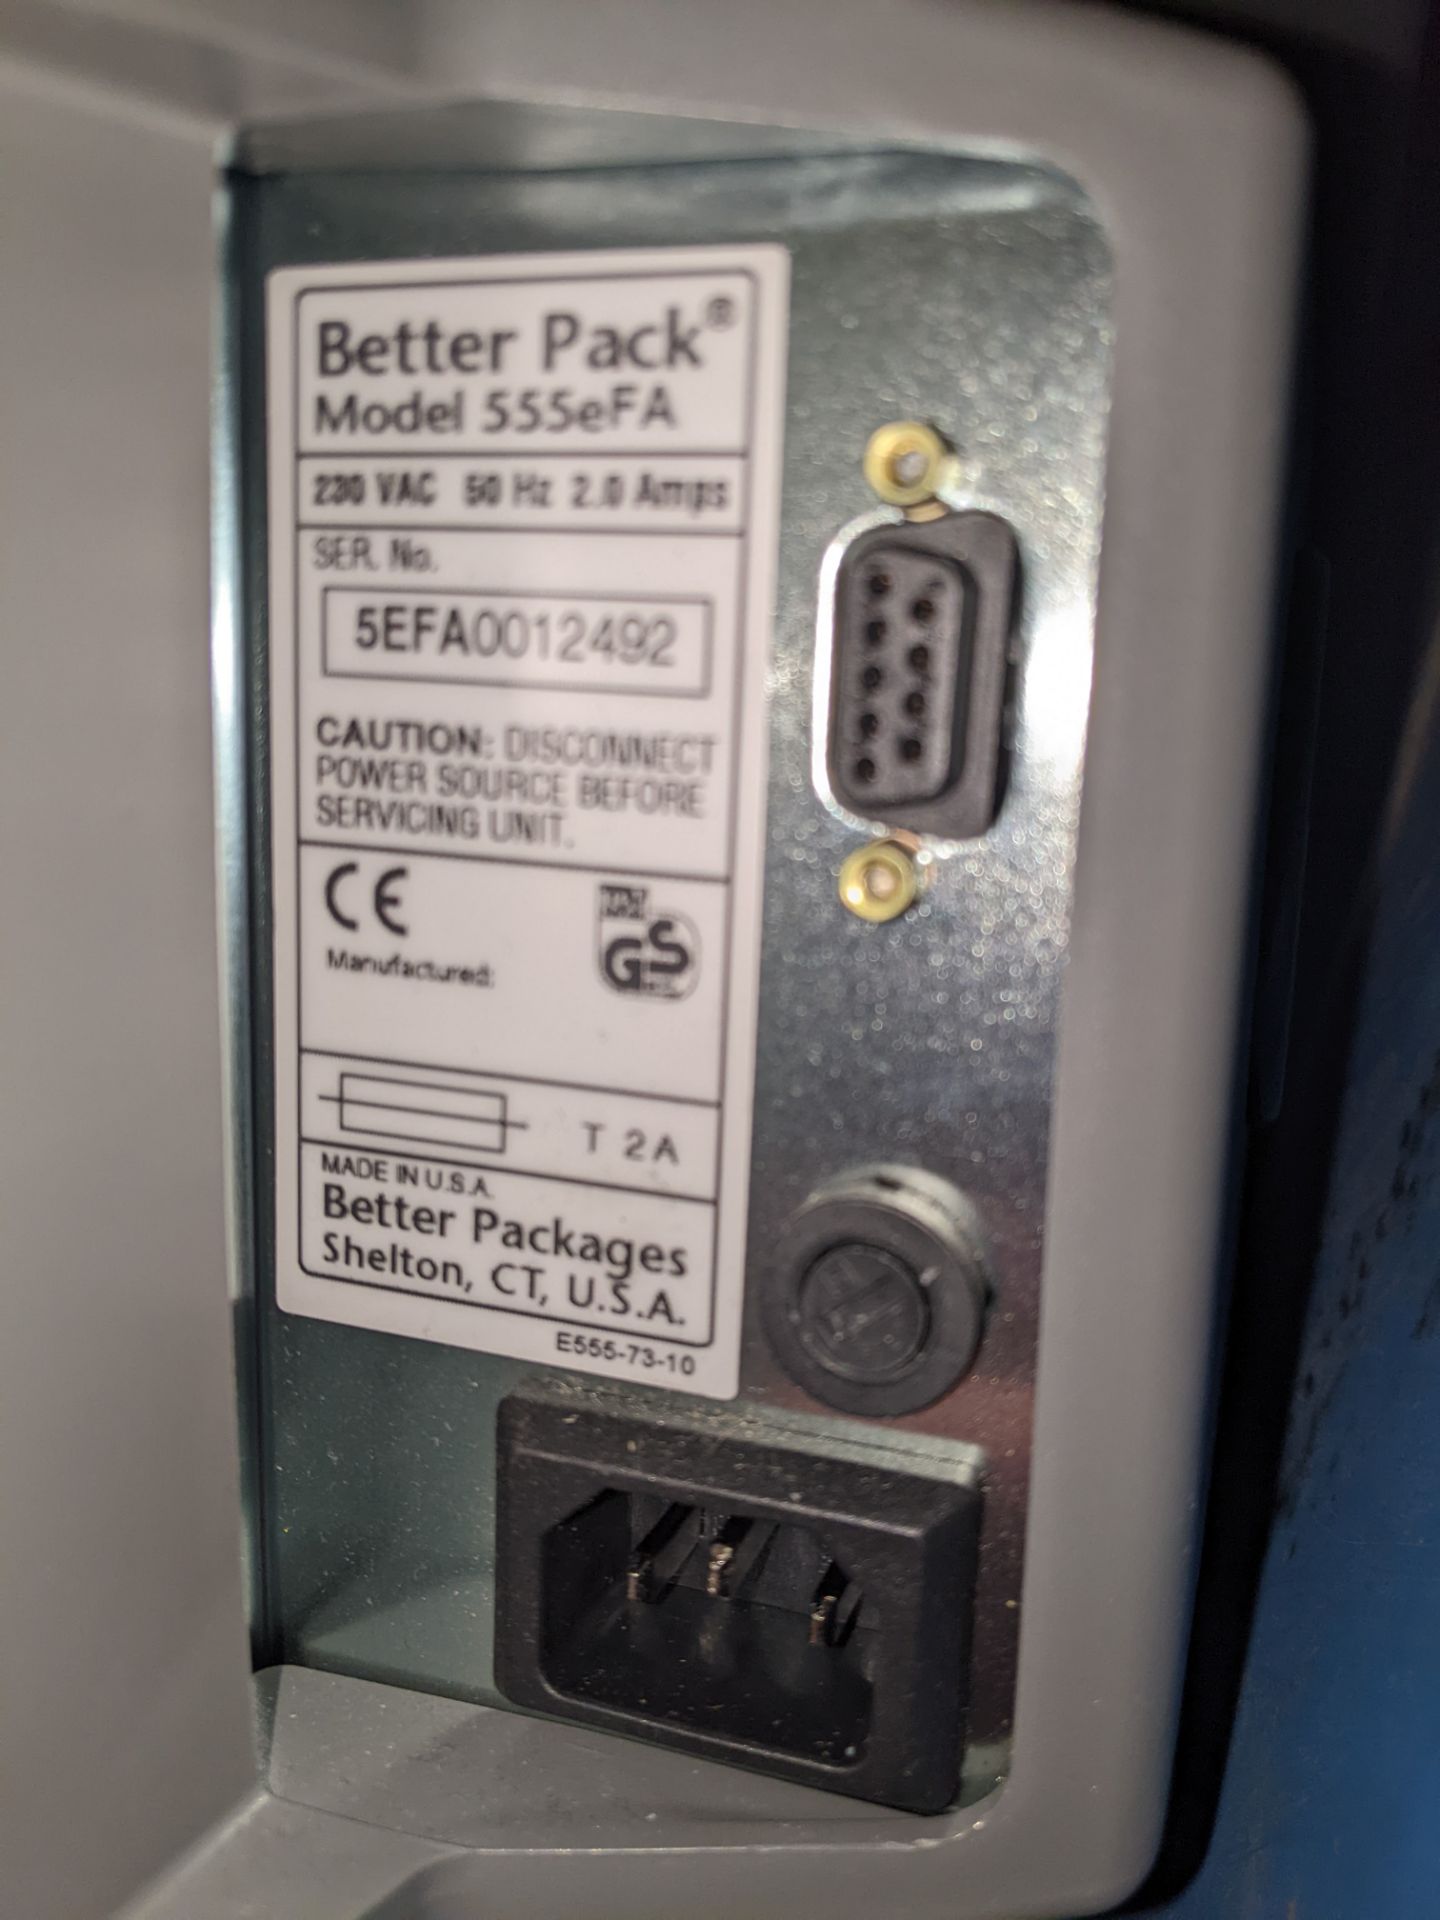 Better Pack Electronic Gummed Tape Dispenser | 555 eFa - Image 4 of 4